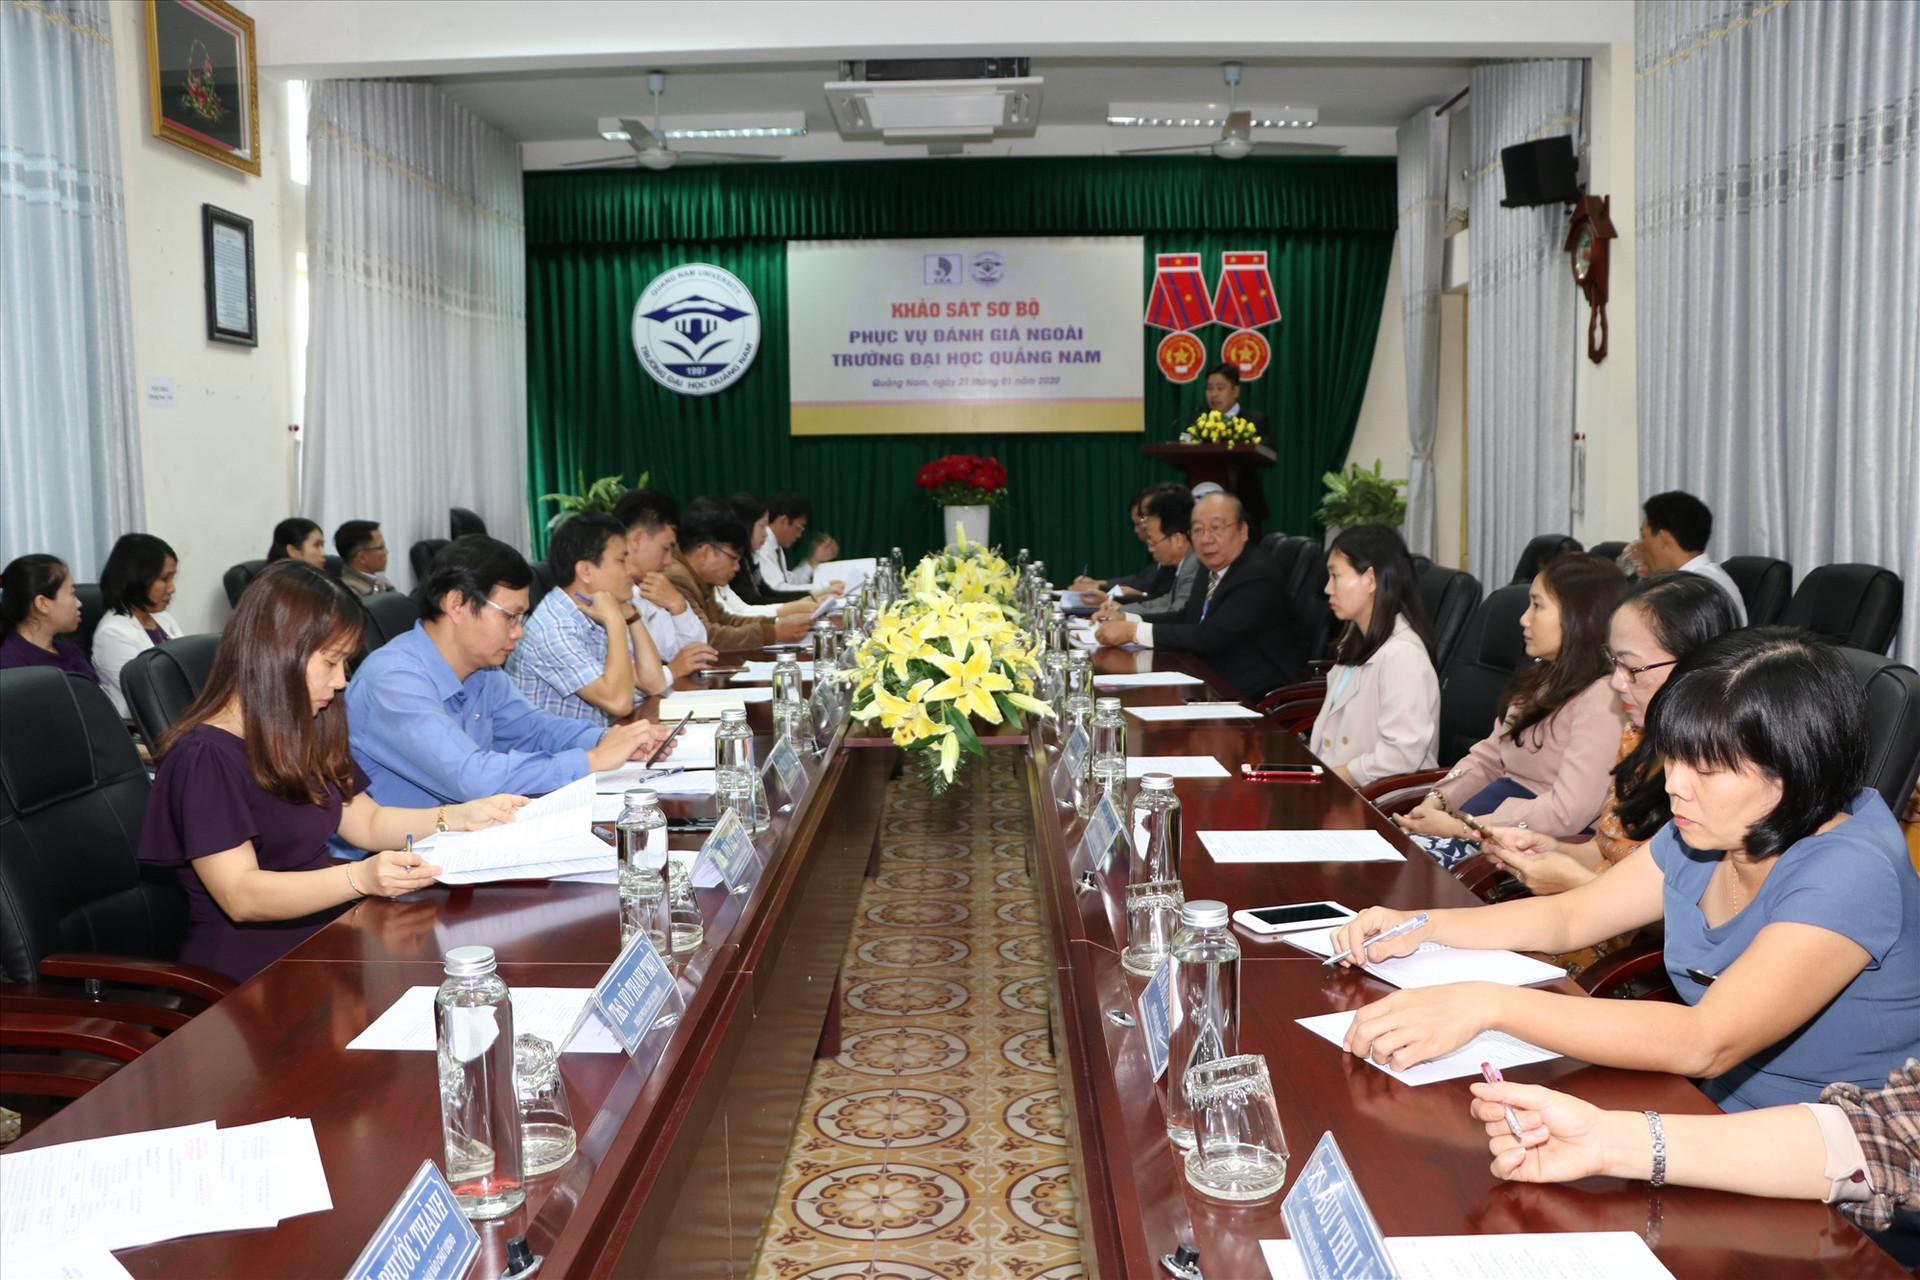 Đoàn chuyên gia đánh giá ngoài cơ sở giáo dục làm việc với Hội đồng tự đánh giá của Trường Đại học Quảng Nam. Ảnh: CHÂU HÙNG